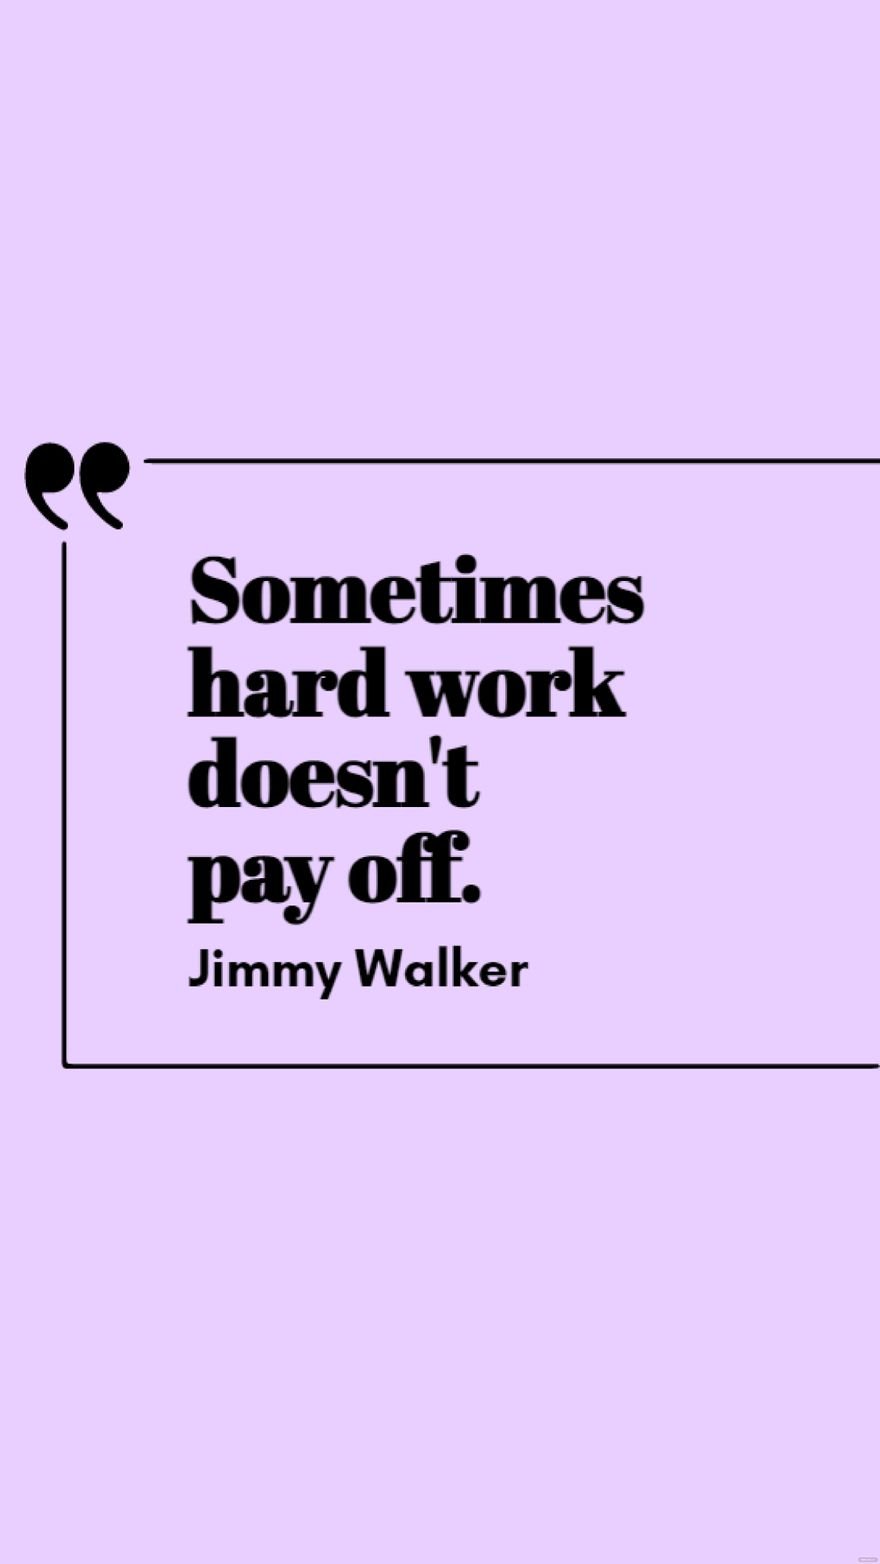 Jimmy Walker - Sometimes hard work doesn't pay off.